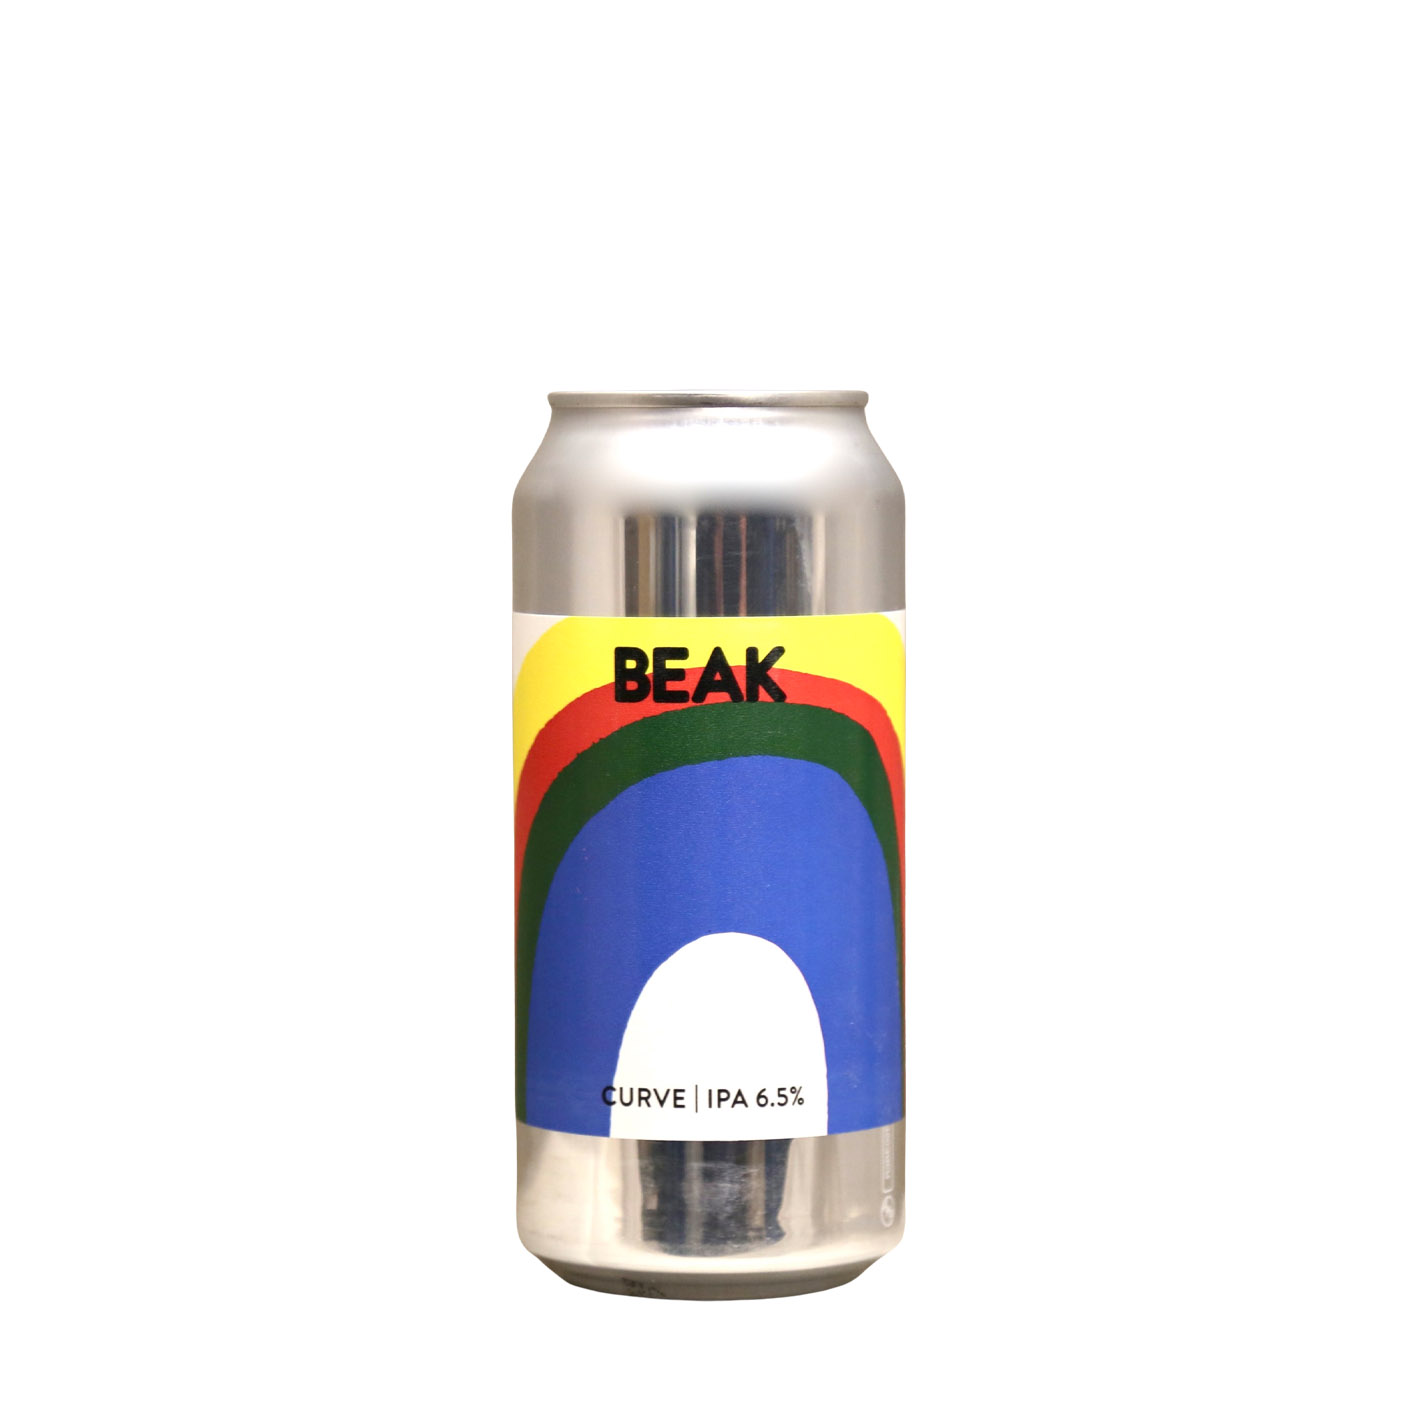 Beak Brewery – Curve IPA | Buy Online | Craft Metropolis